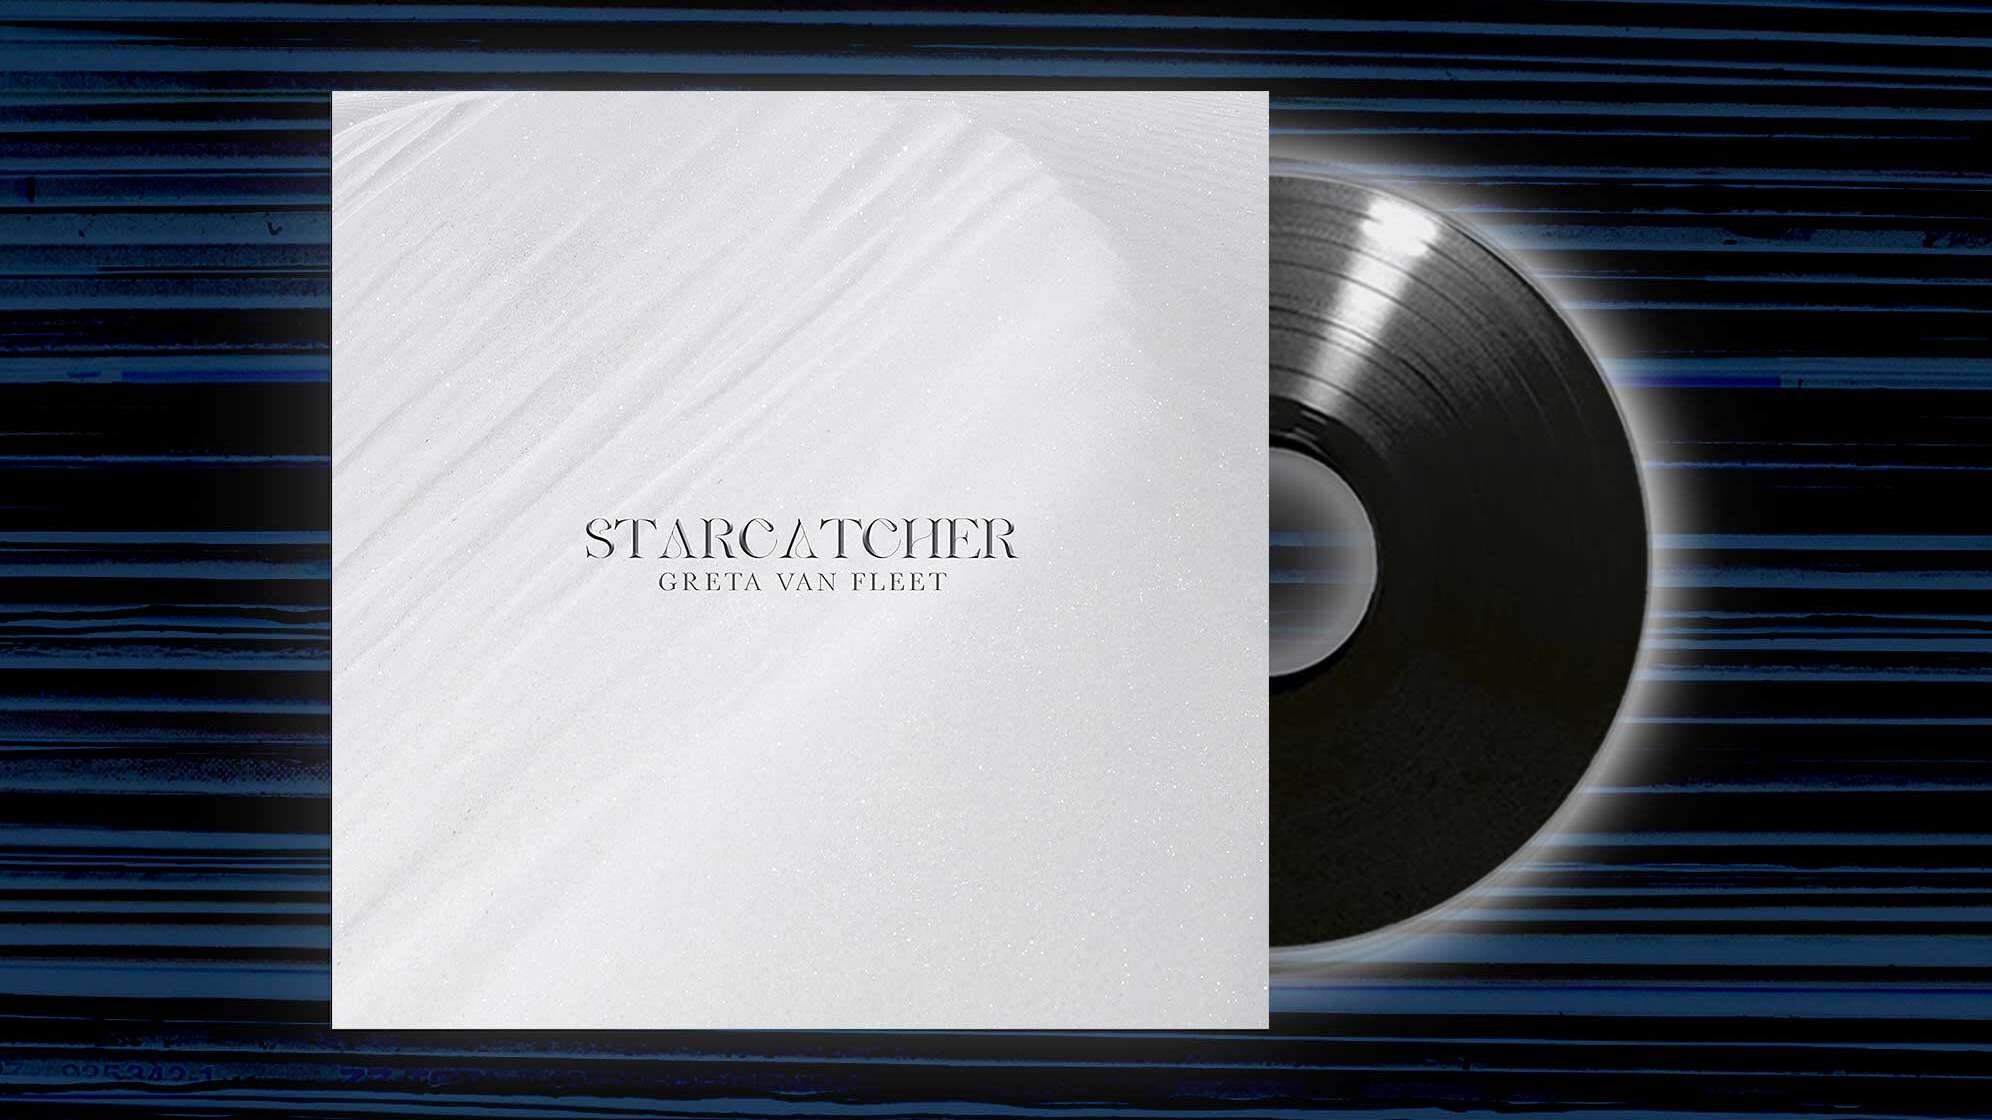 Das Albumcover von Greta Van Fleets "Starcatcher" komplett in Weiß mit Glitzer